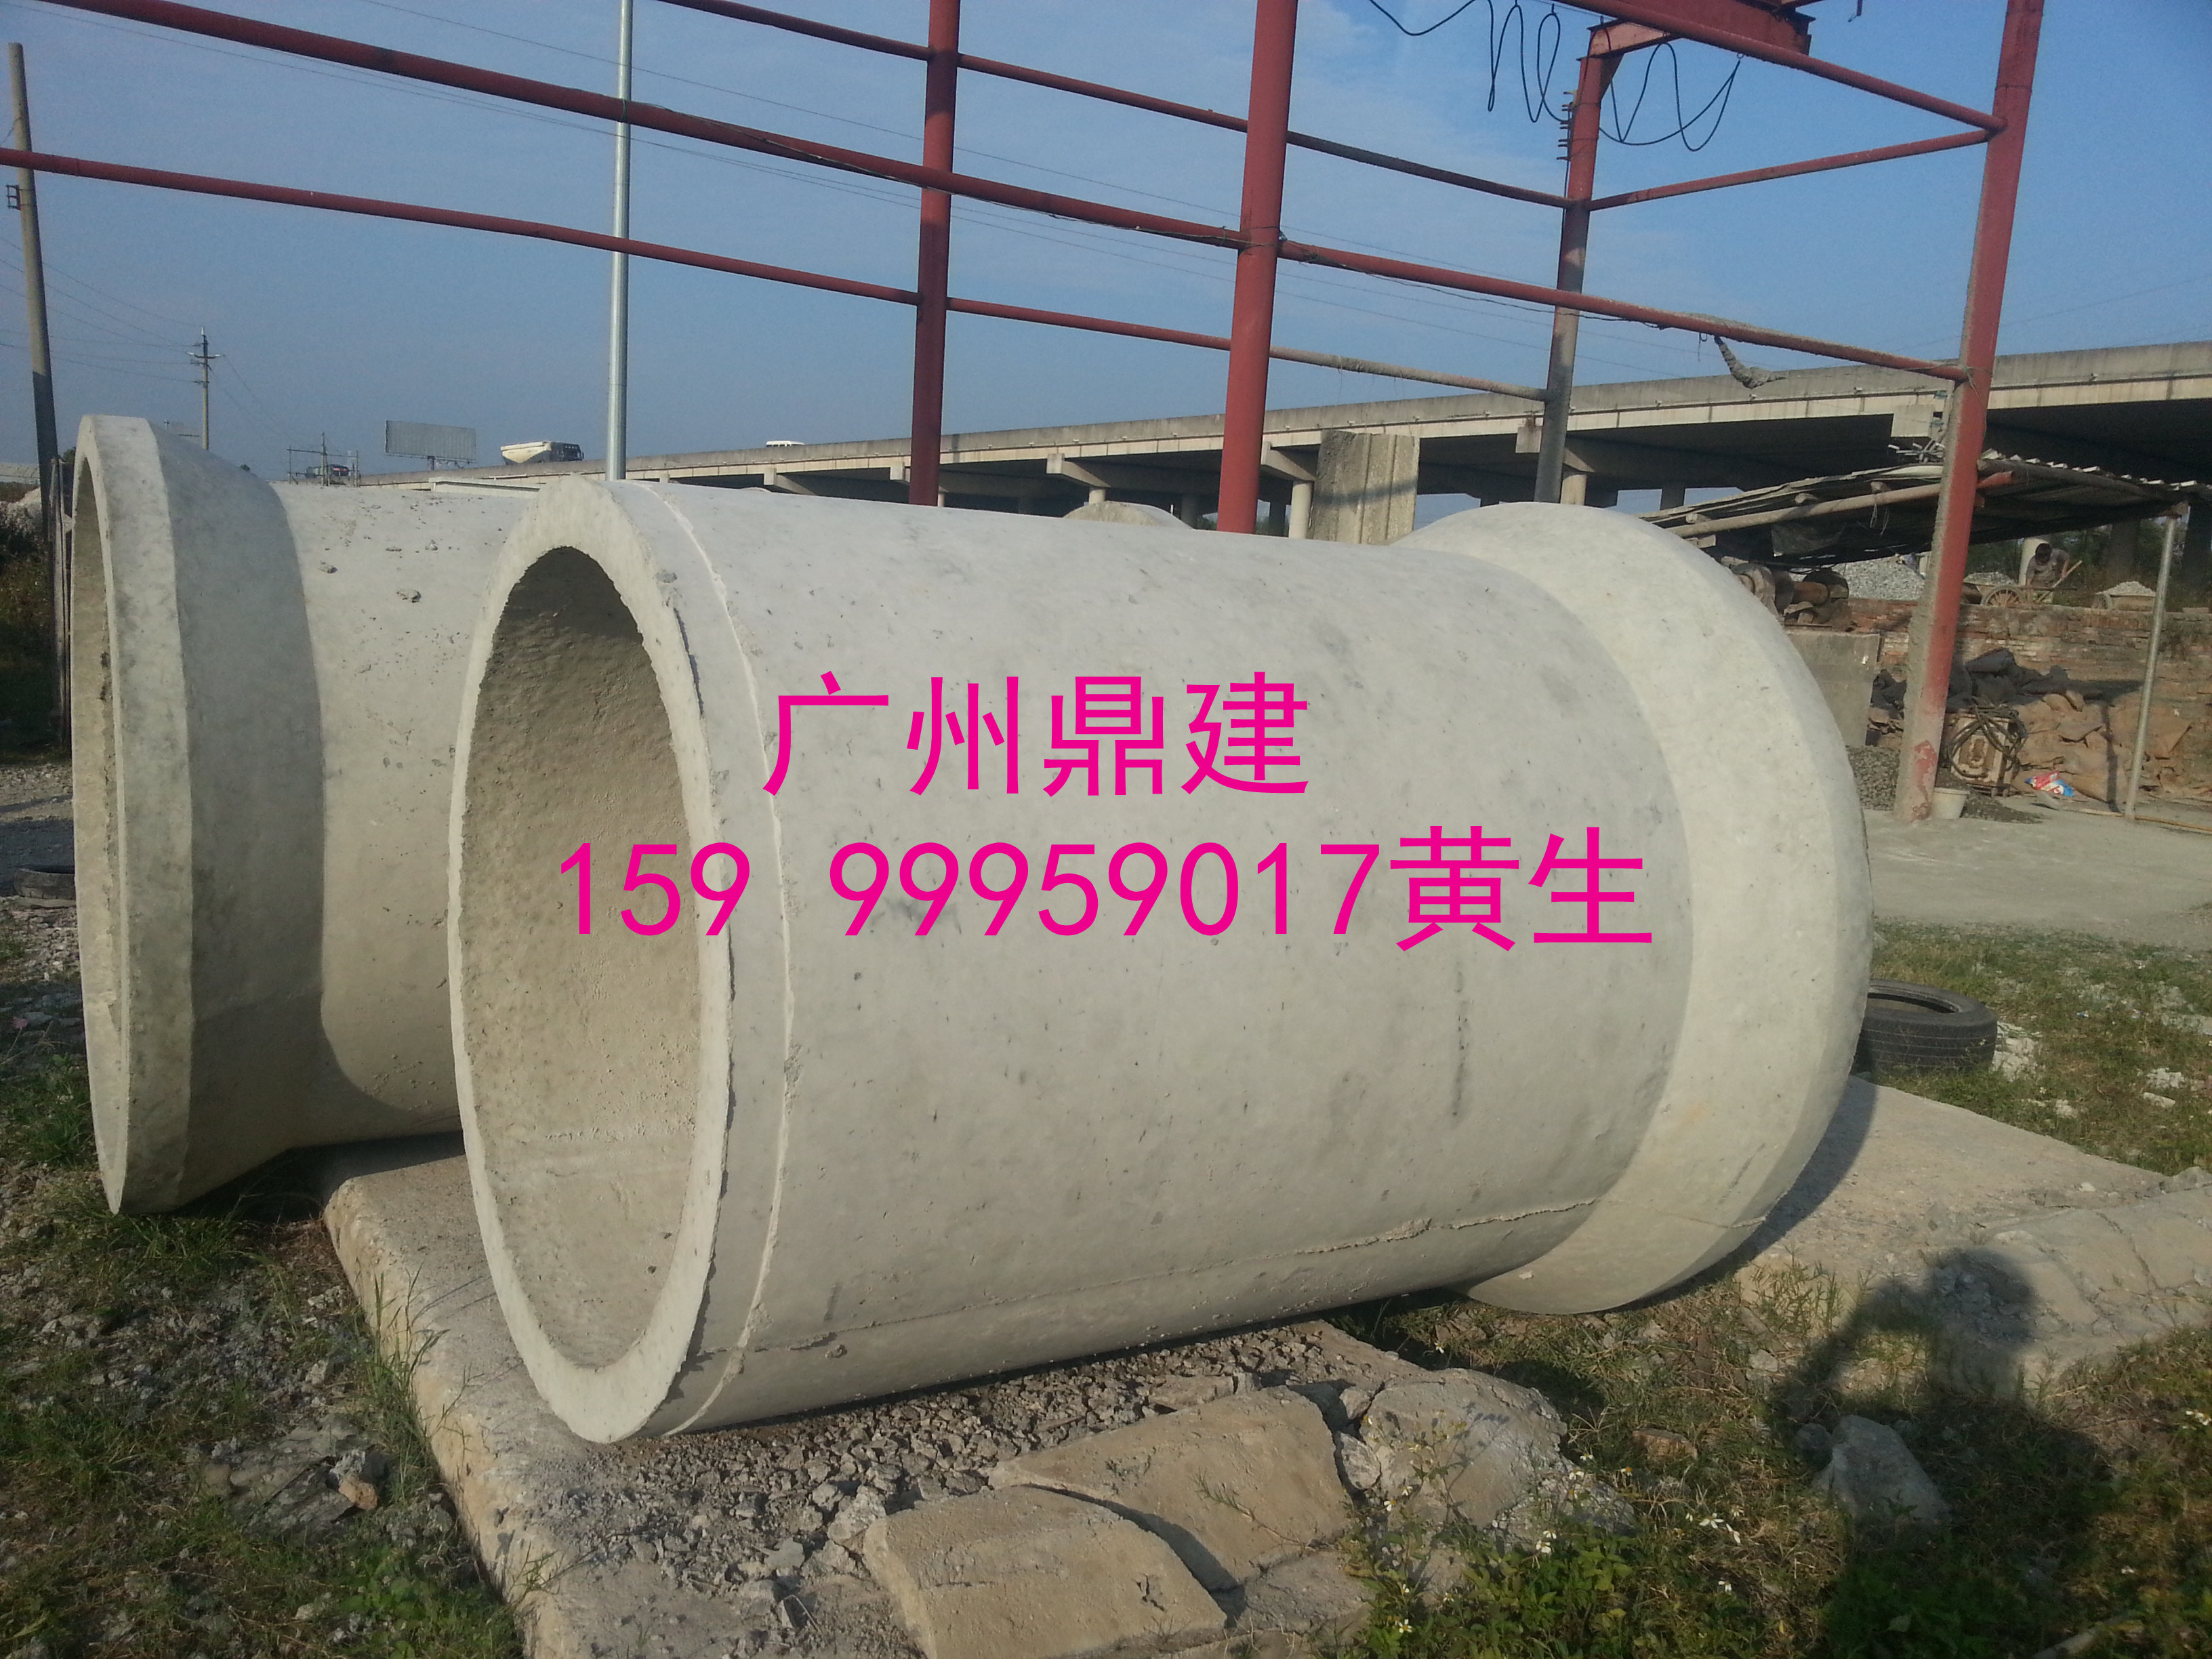 广州越秀钢筋混凝土管官方图片批发